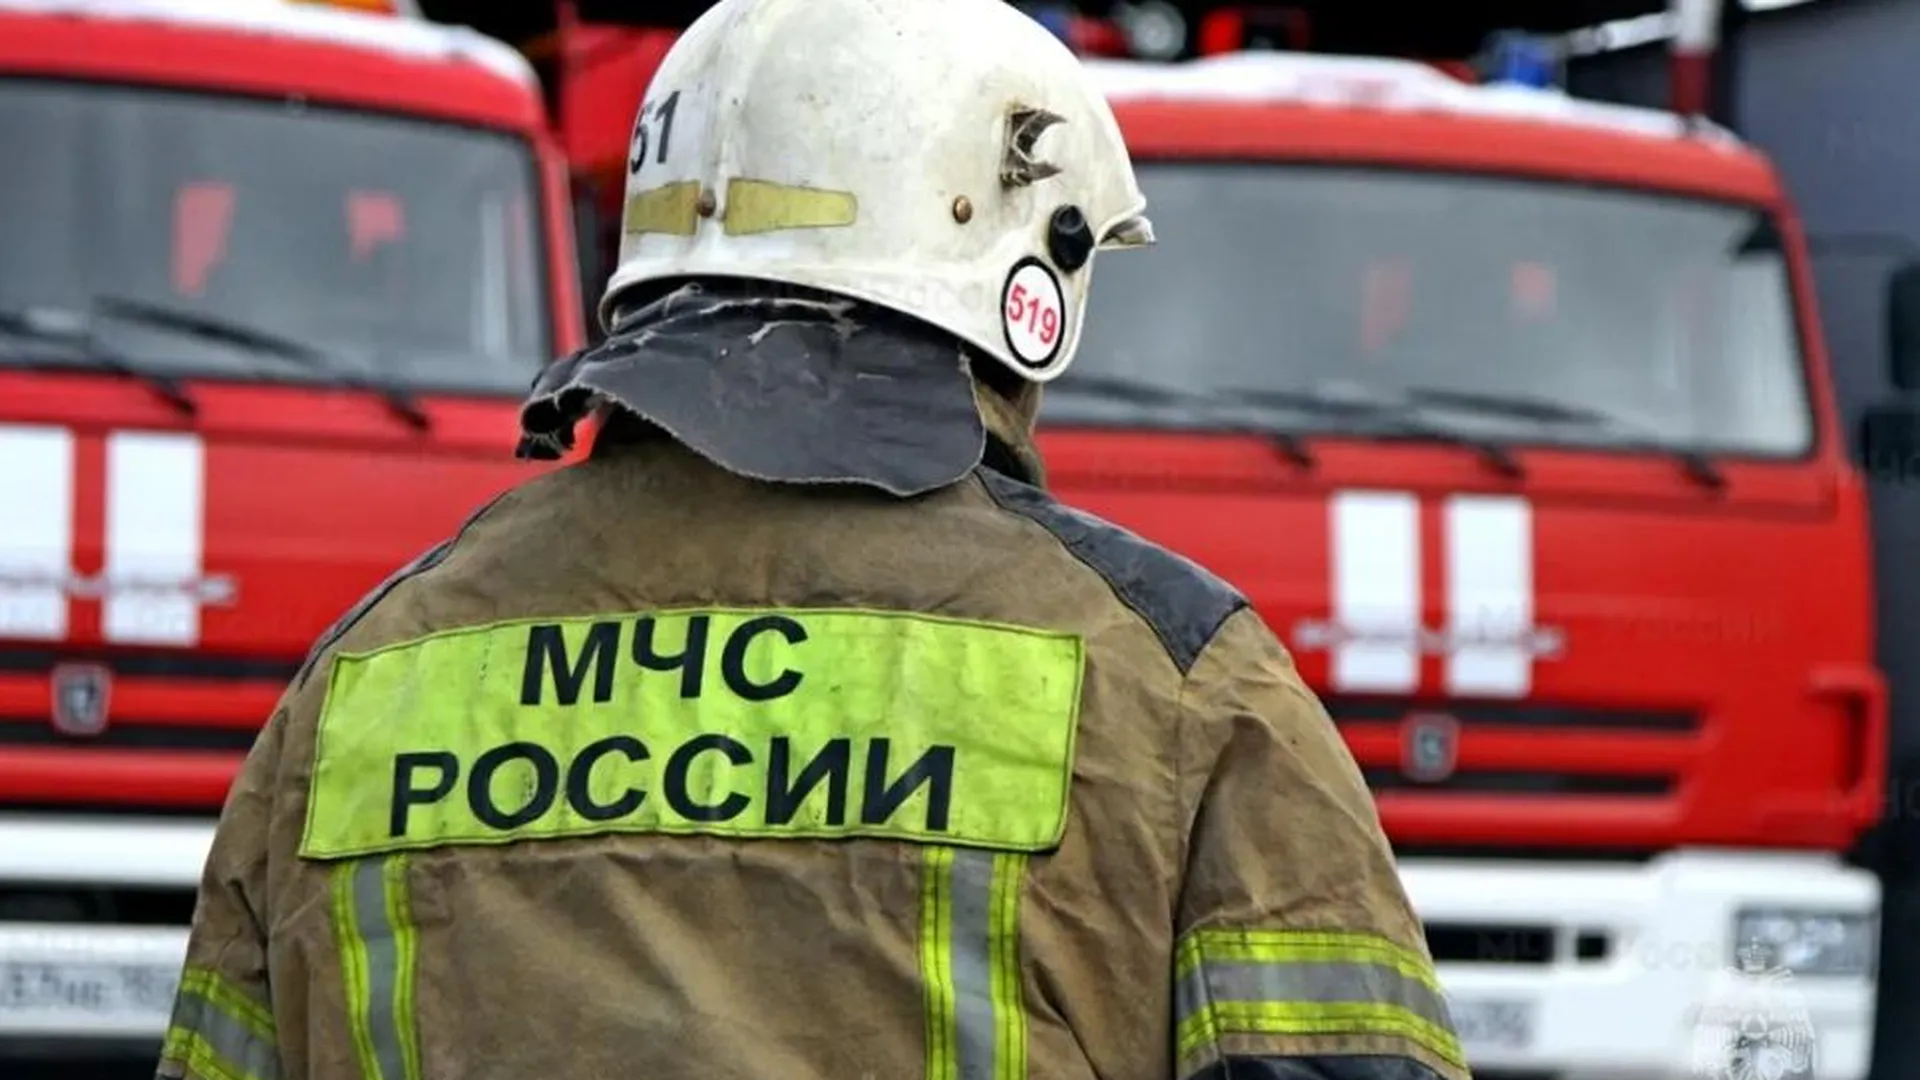 Сильный пожар разгорелся на производственном предприятии в Орехово-Зуеве